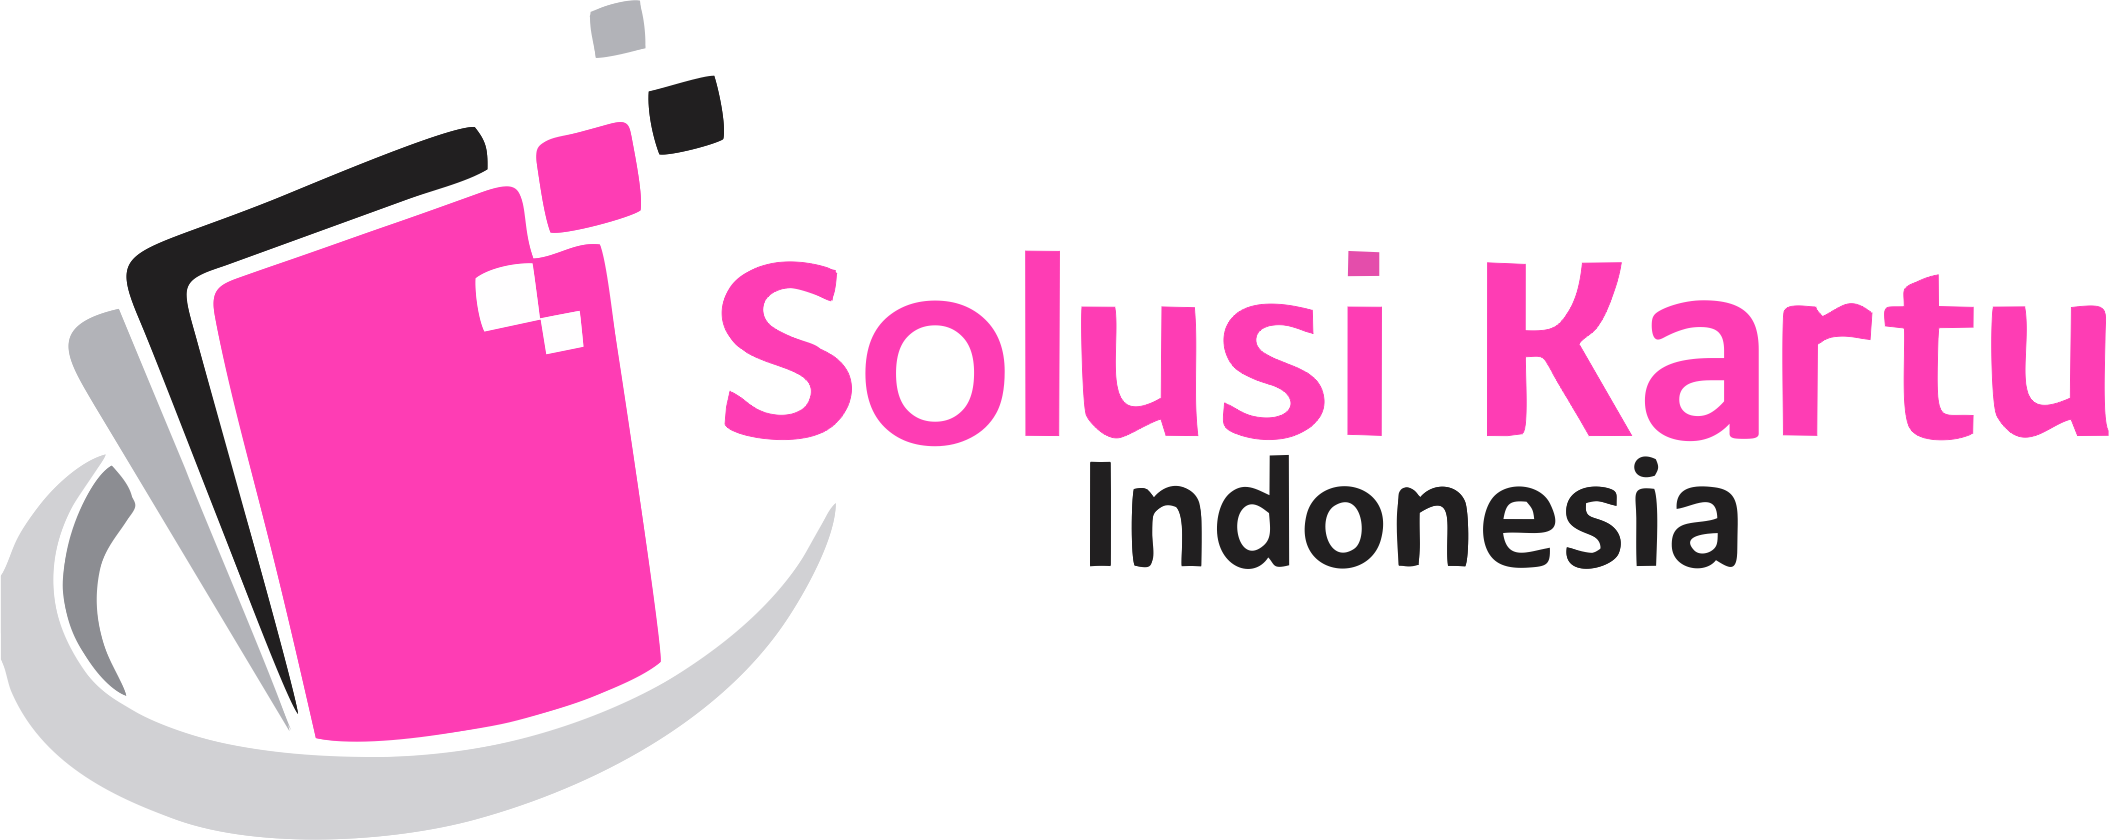 PT. Solusi Kartu Indonesia